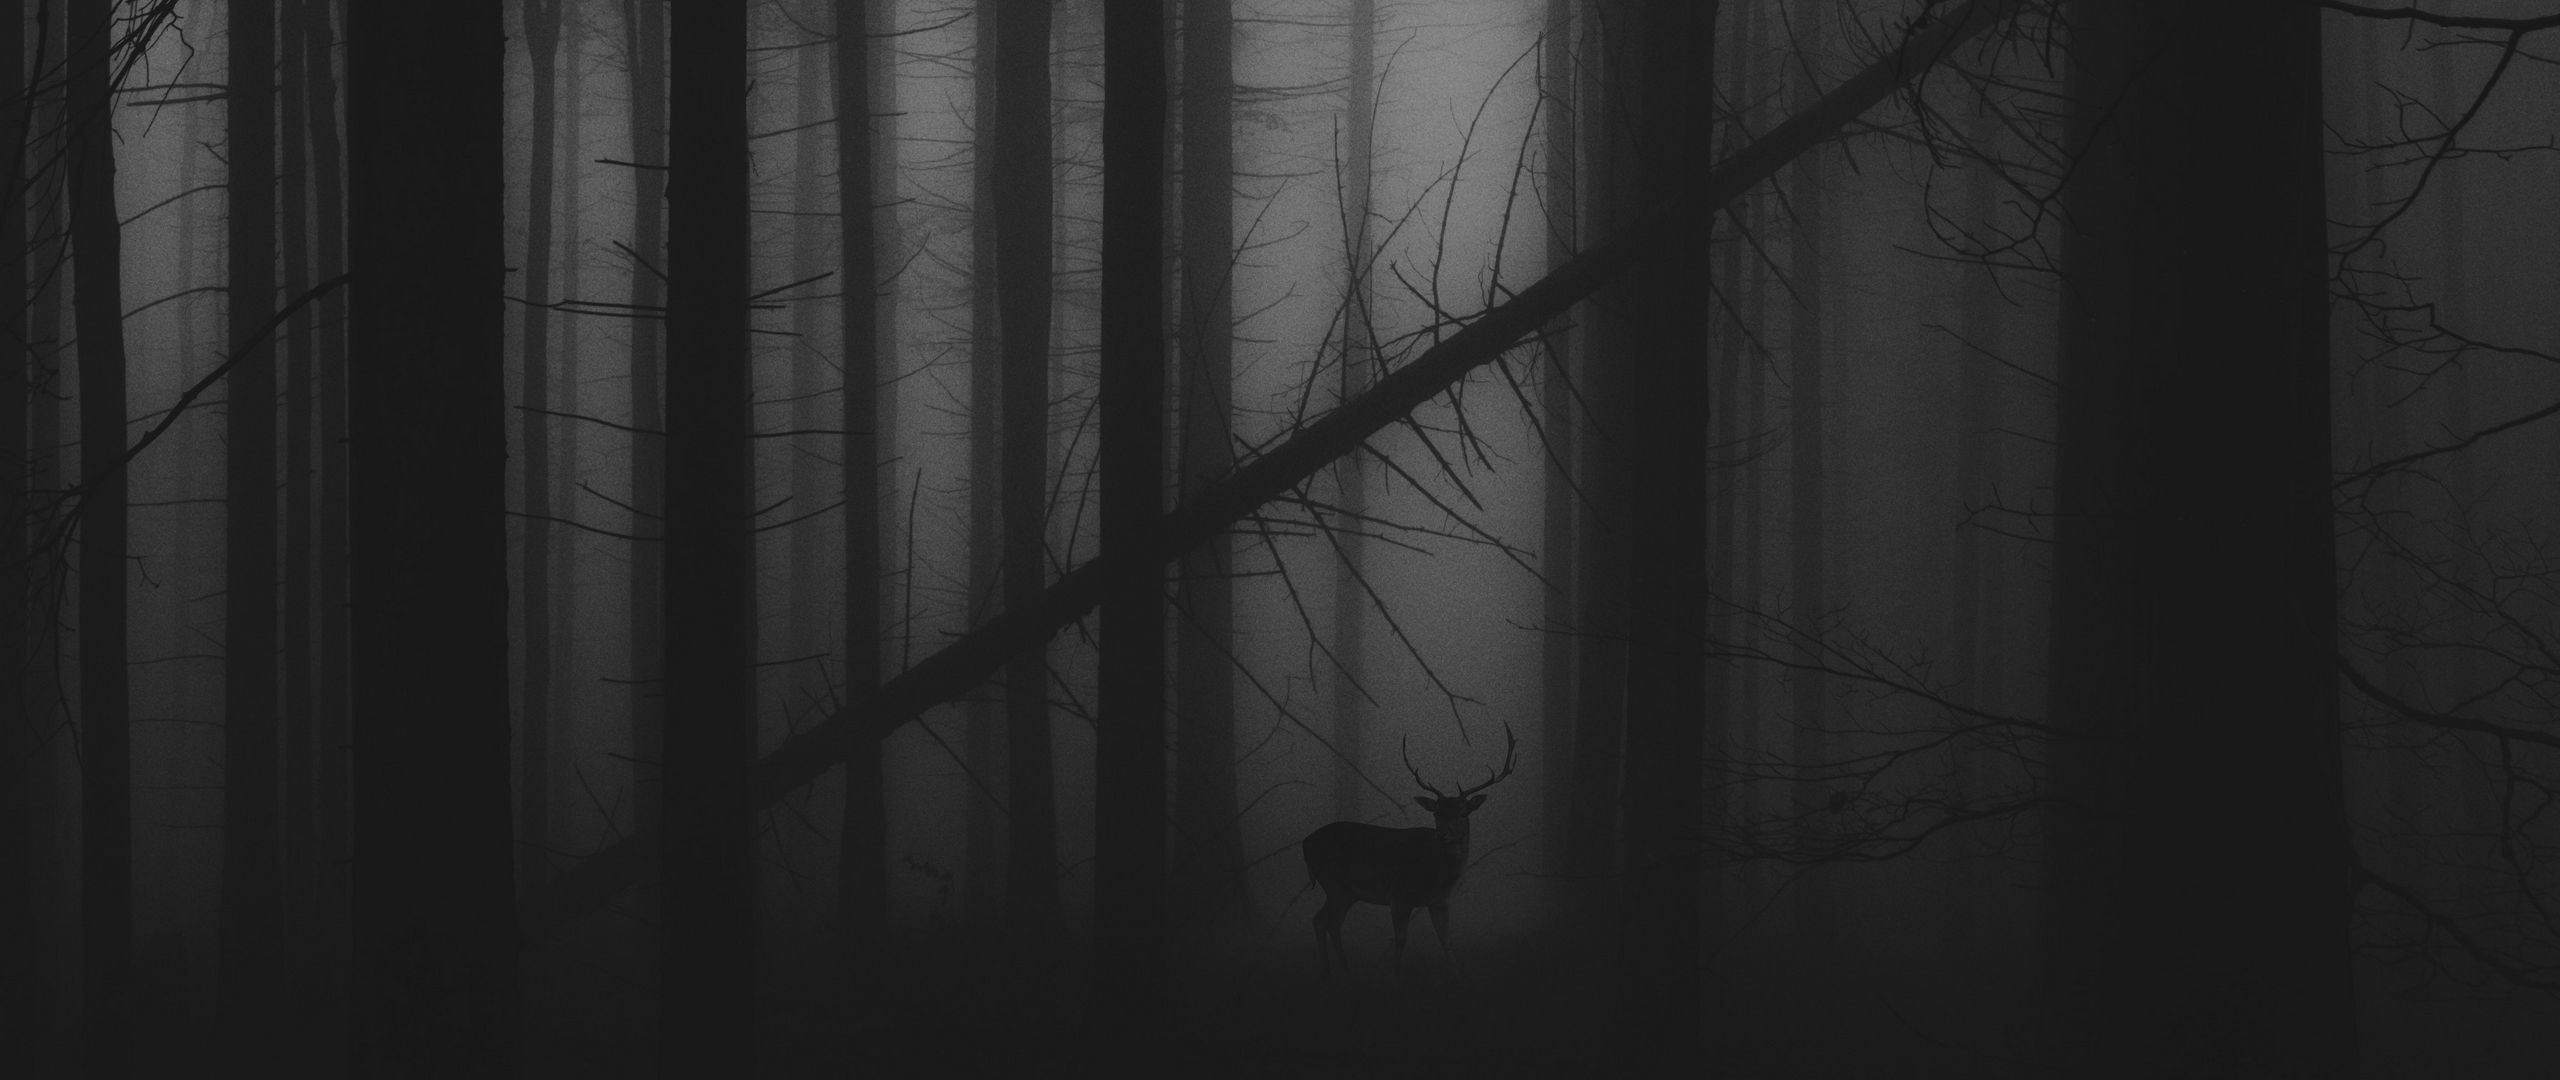 2560x1080 Wallpaper forest, fog, deer, bw, gloomy